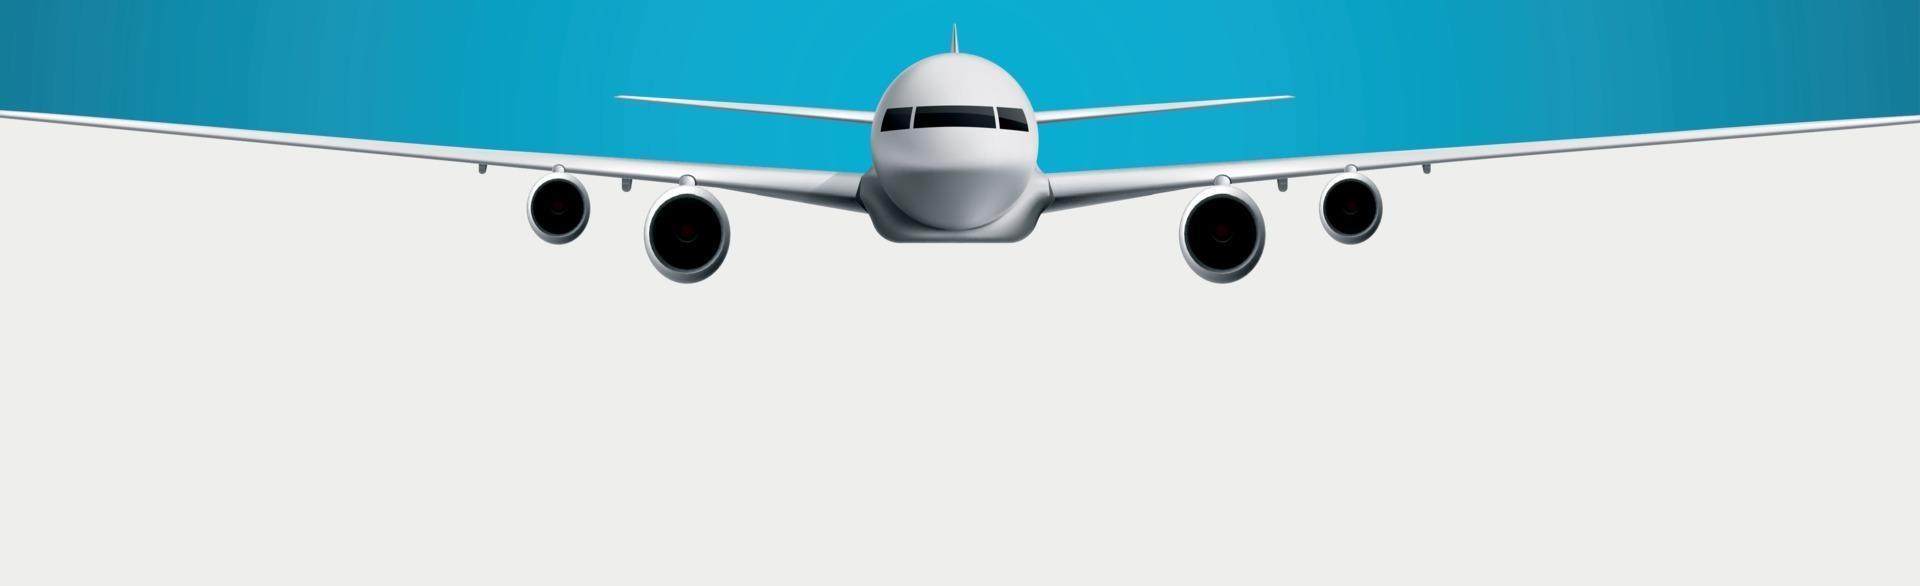 modelo realista de uma aeronave civil em um fundo branco e azul - vetor